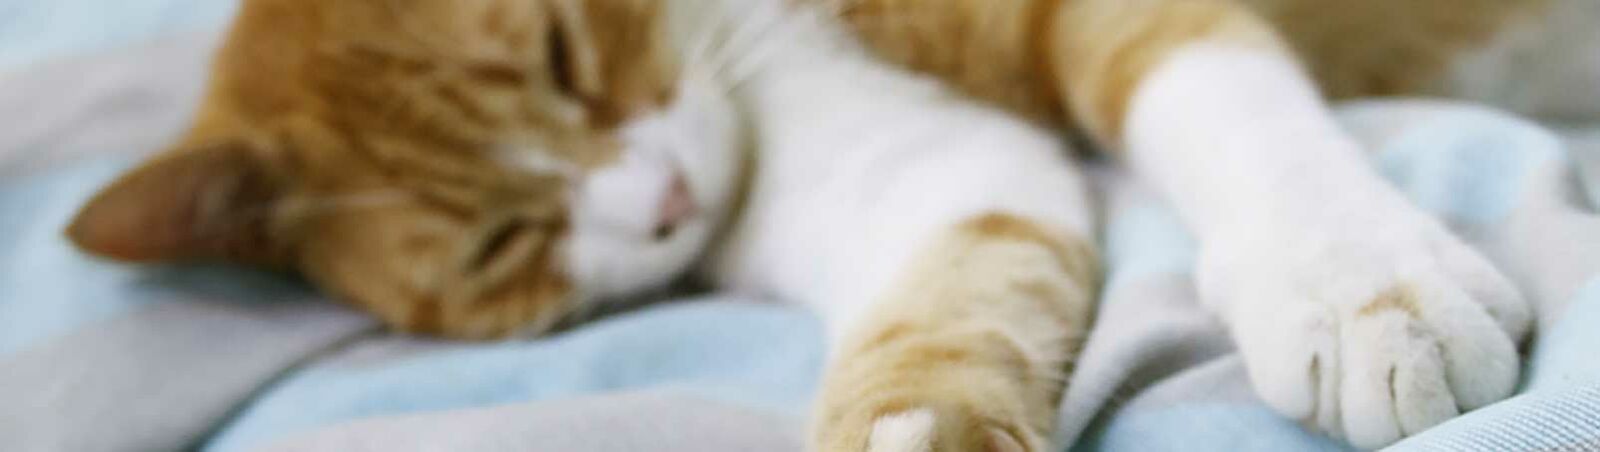 Eine schläfrige Katze streckt ihre Pfoten aus.